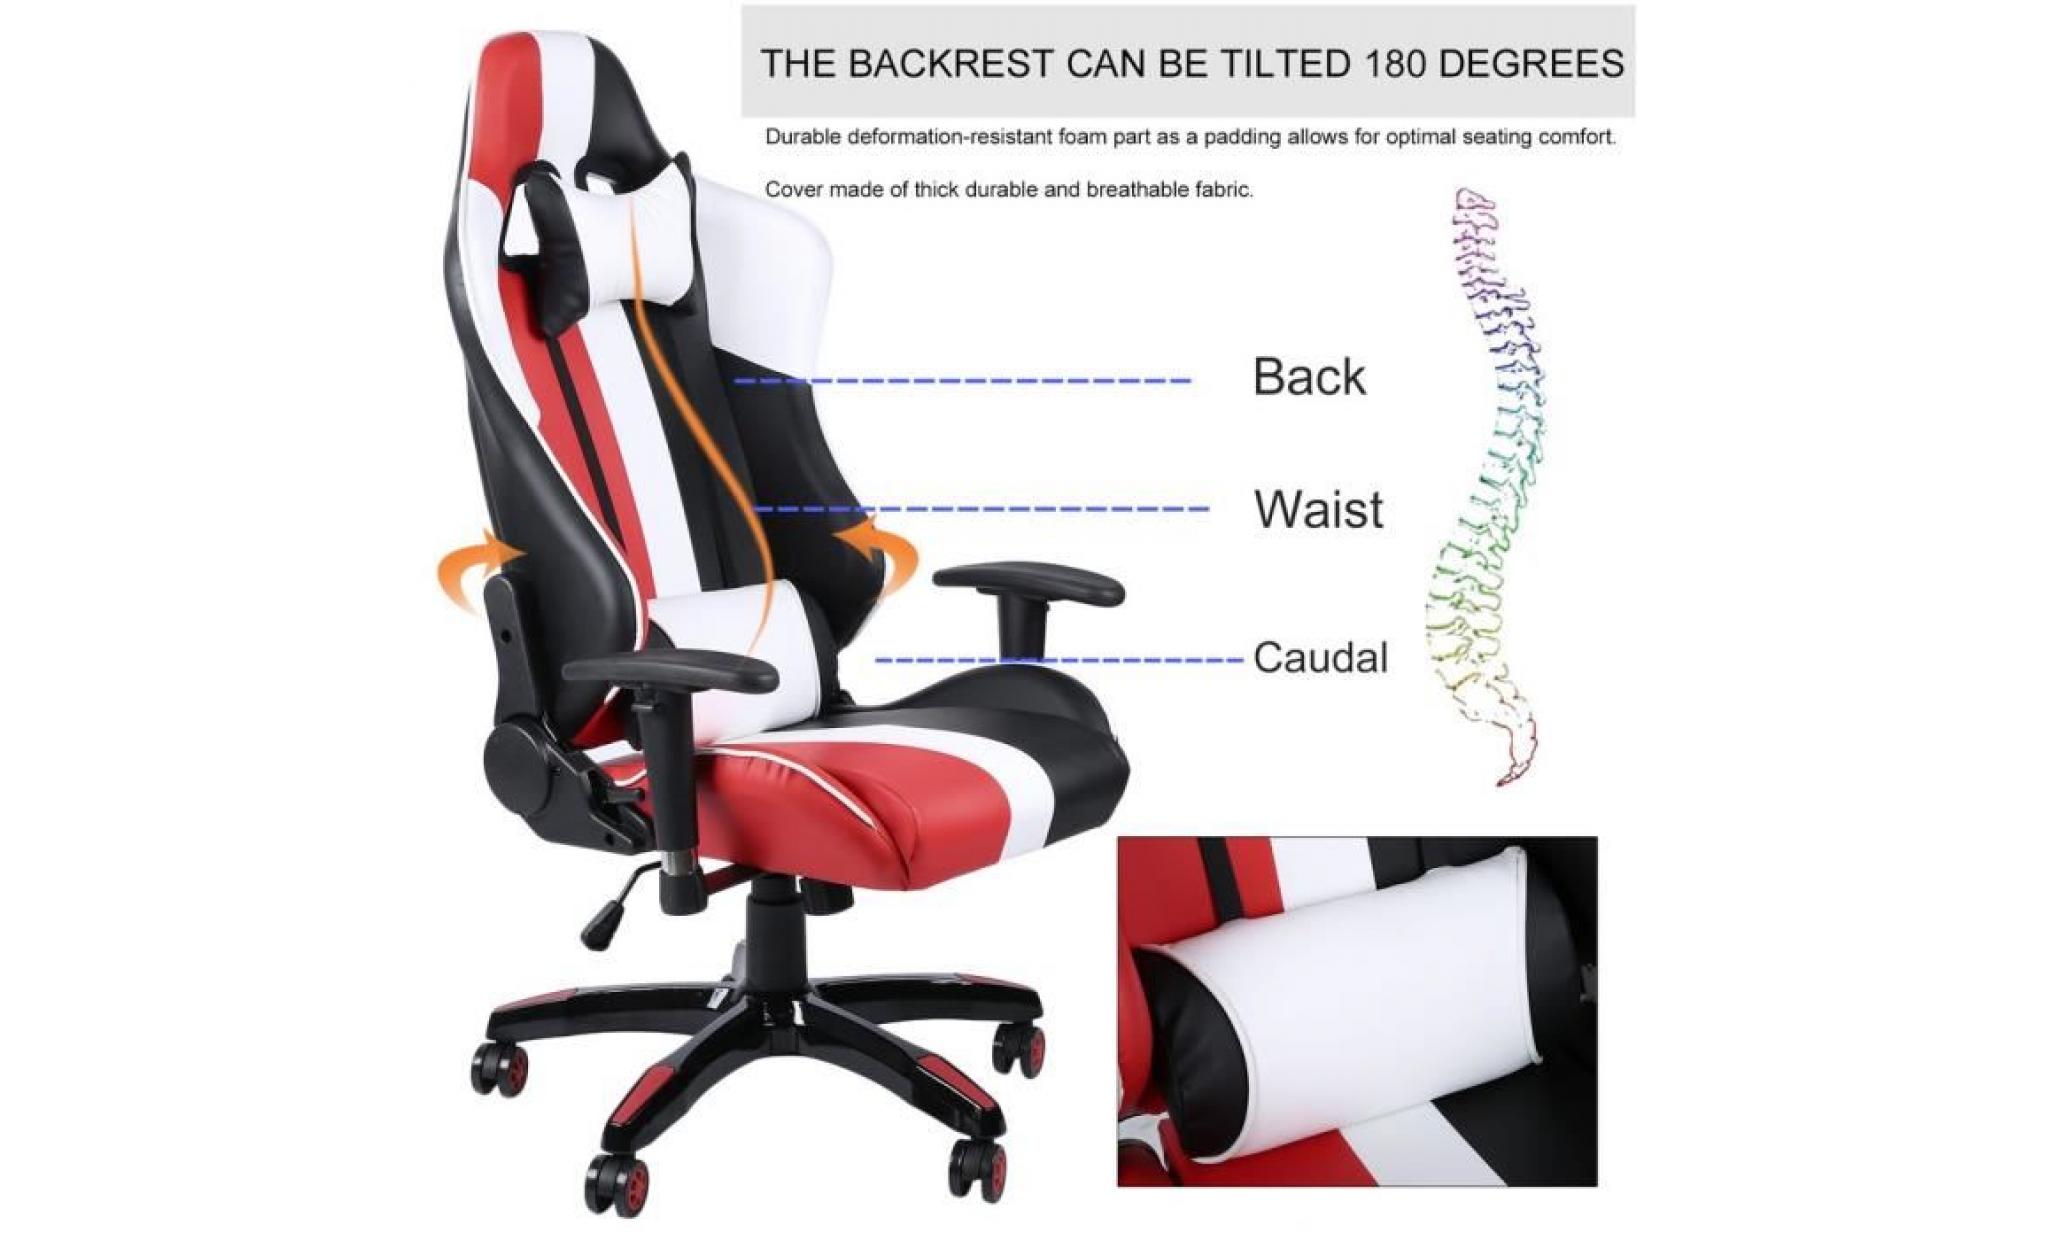 rouge+blanc+noir style moderne mélange fauteuil chaise de jeu pu cuir luxe cybercafé reins protection pas cher